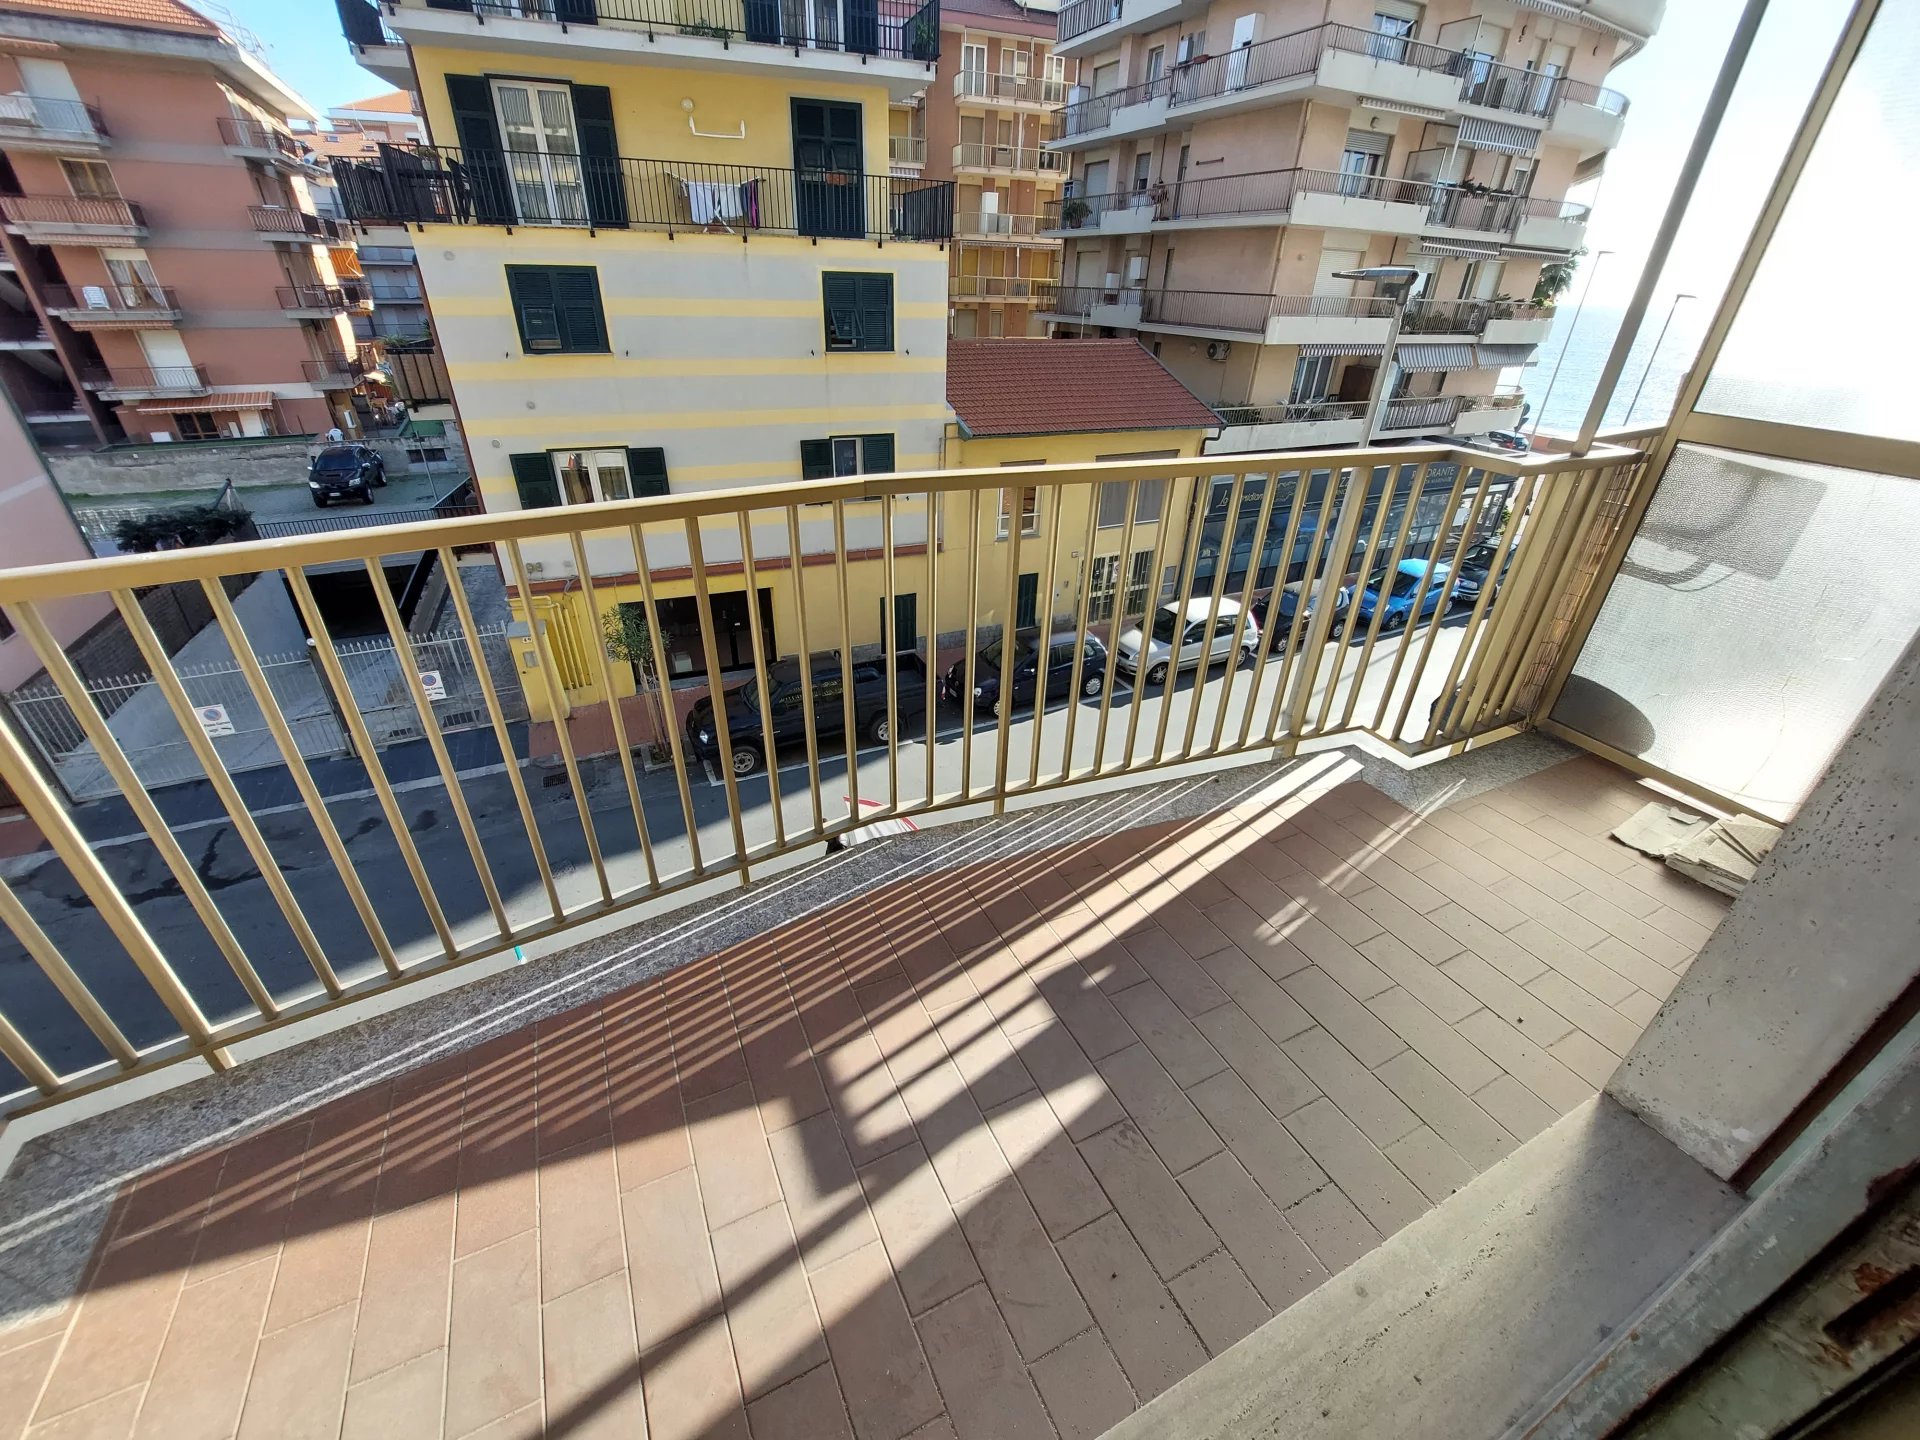 Sale Apartment - Ventimiglia Asse - Italy